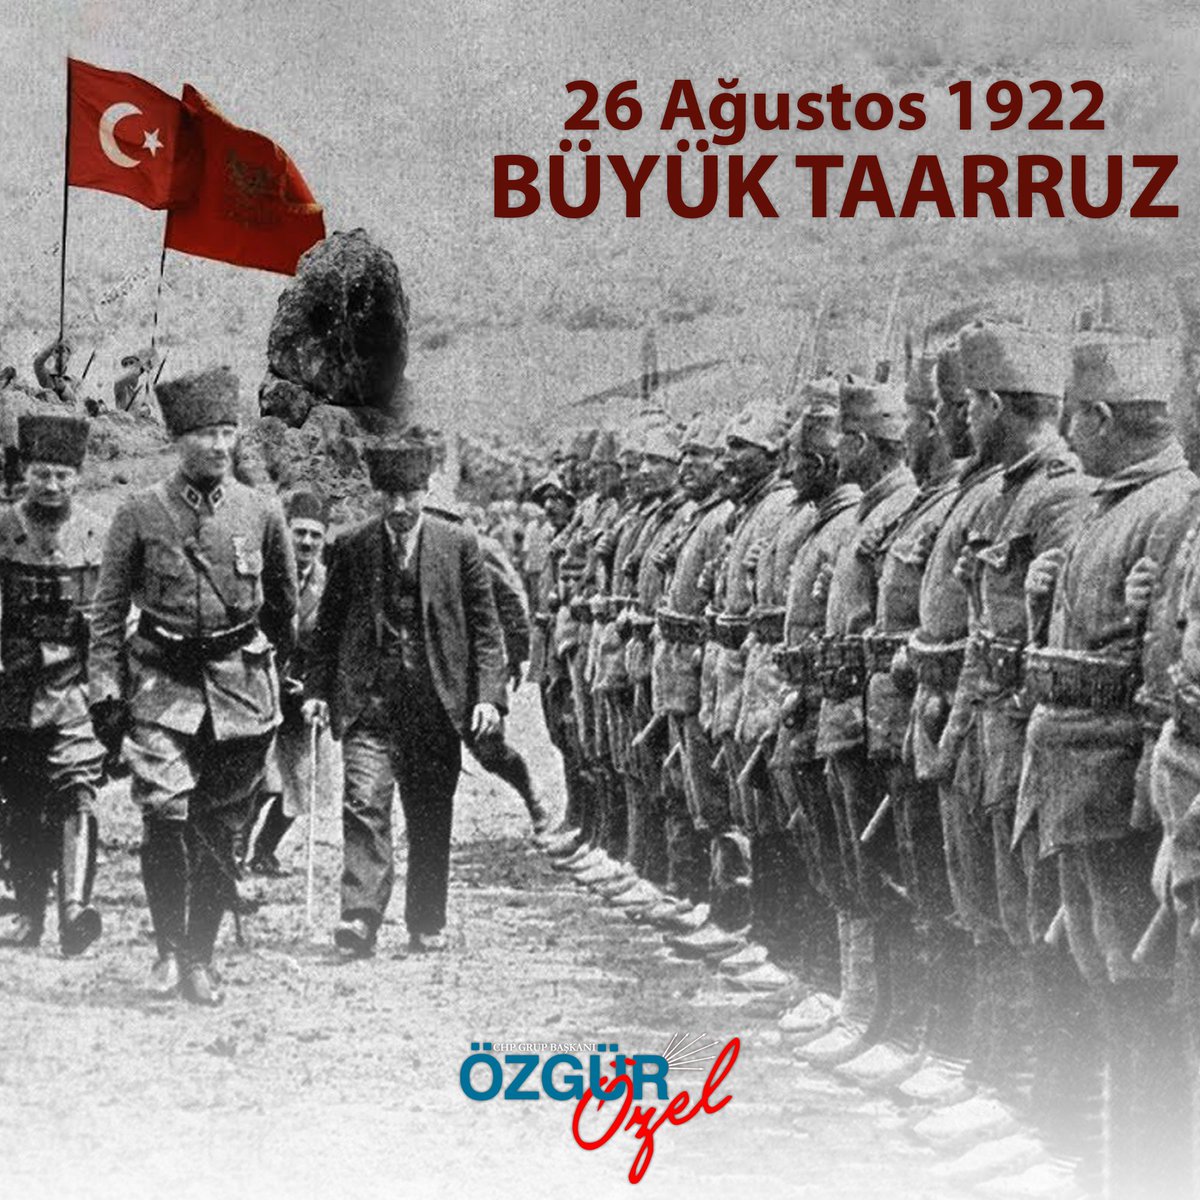 #26Ağustos1922'de başlayan #BüyükTaarruz'la tüm dünyaya antiemperyalist bir başkaldırının zaferle sonuçlanacağını adım adım gösterdik. Başta Mustafa Kemal Atatürk olmak üzere bağımsızlık mücadelemizin tüm kahramanlarını saygıyla ve minnetle anıyorum.